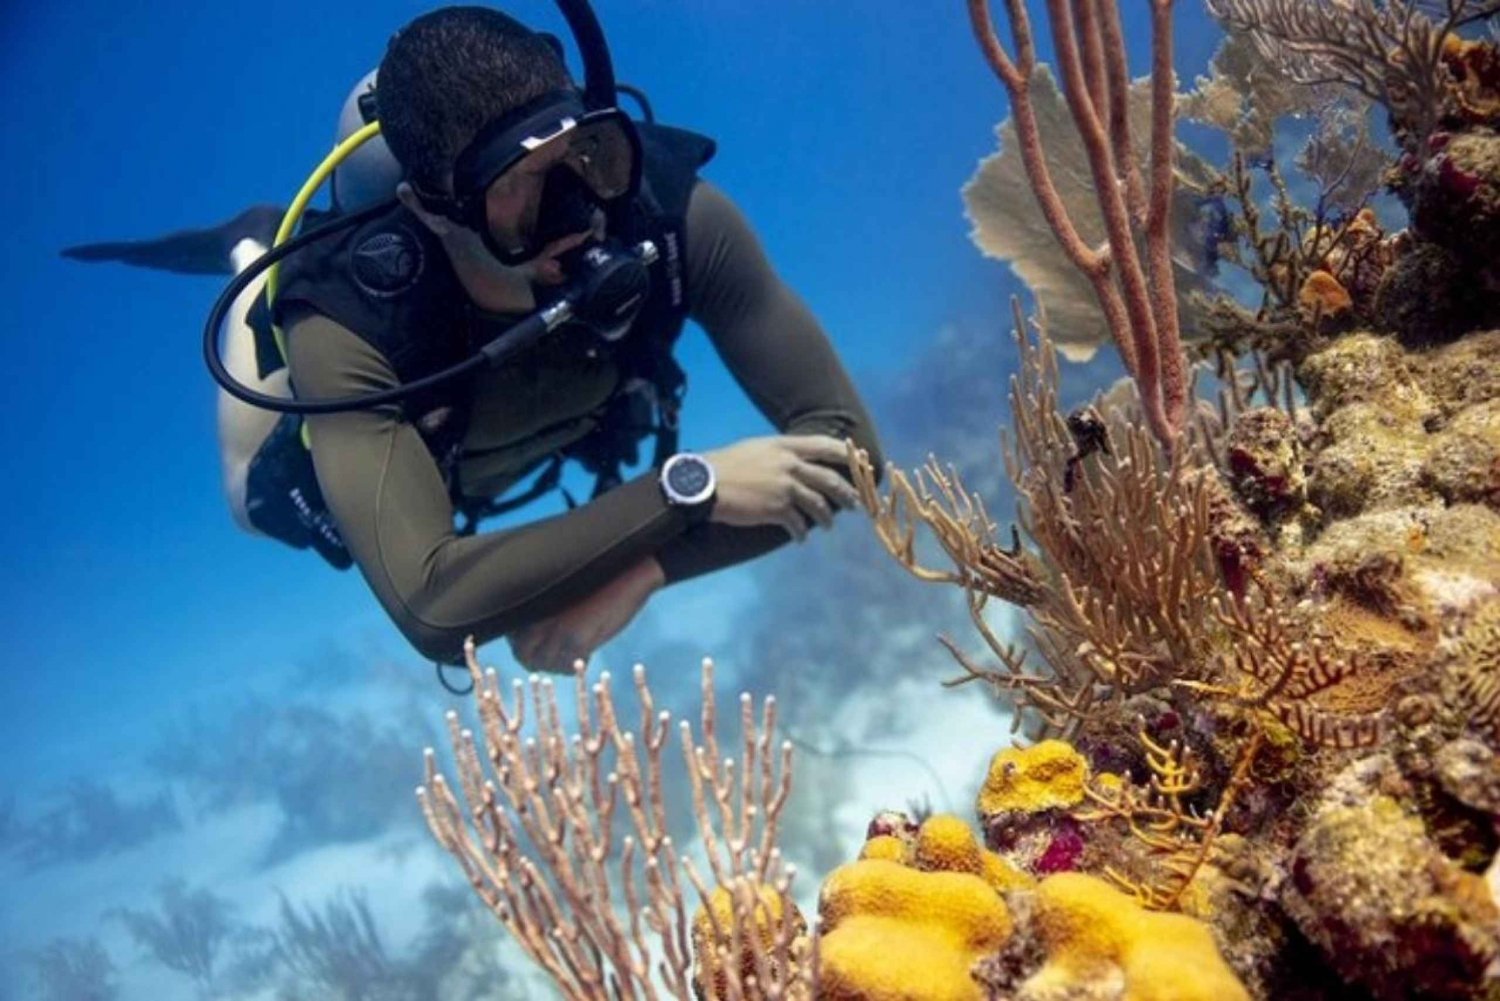 Oplev dykning ved Australiens mest ikoniske strand